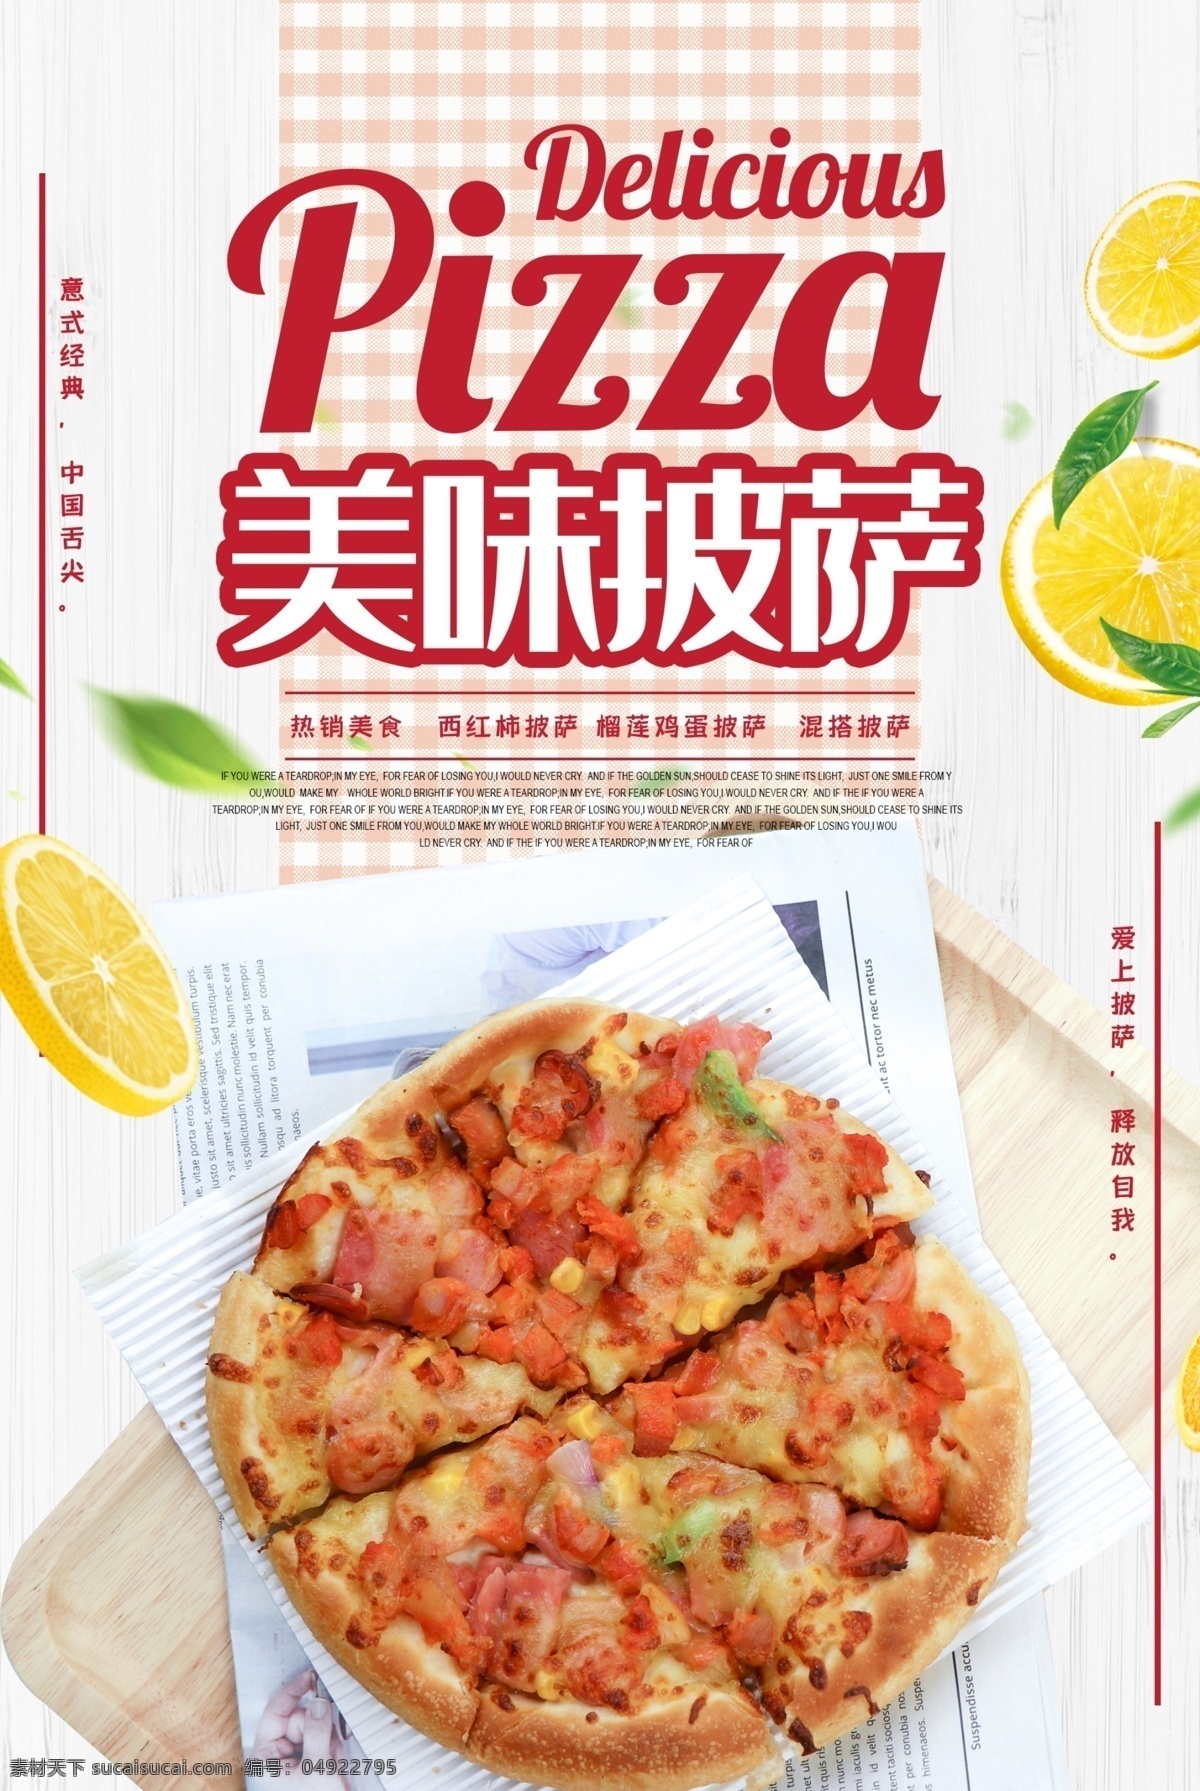 美味披萨 披萨 比萨 欧洲披萨 意大利披萨 pizza 美味 中国披萨 披萨做法 美食 小吃 披萨海报 披萨展板 披萨文化 披萨促销 披萨西餐 披萨快餐 披萨加盟 披萨店 披萨必胜店 比萨披萨 披萨包装 披萨美食 西式披萨 披萨厨师 披萨插画